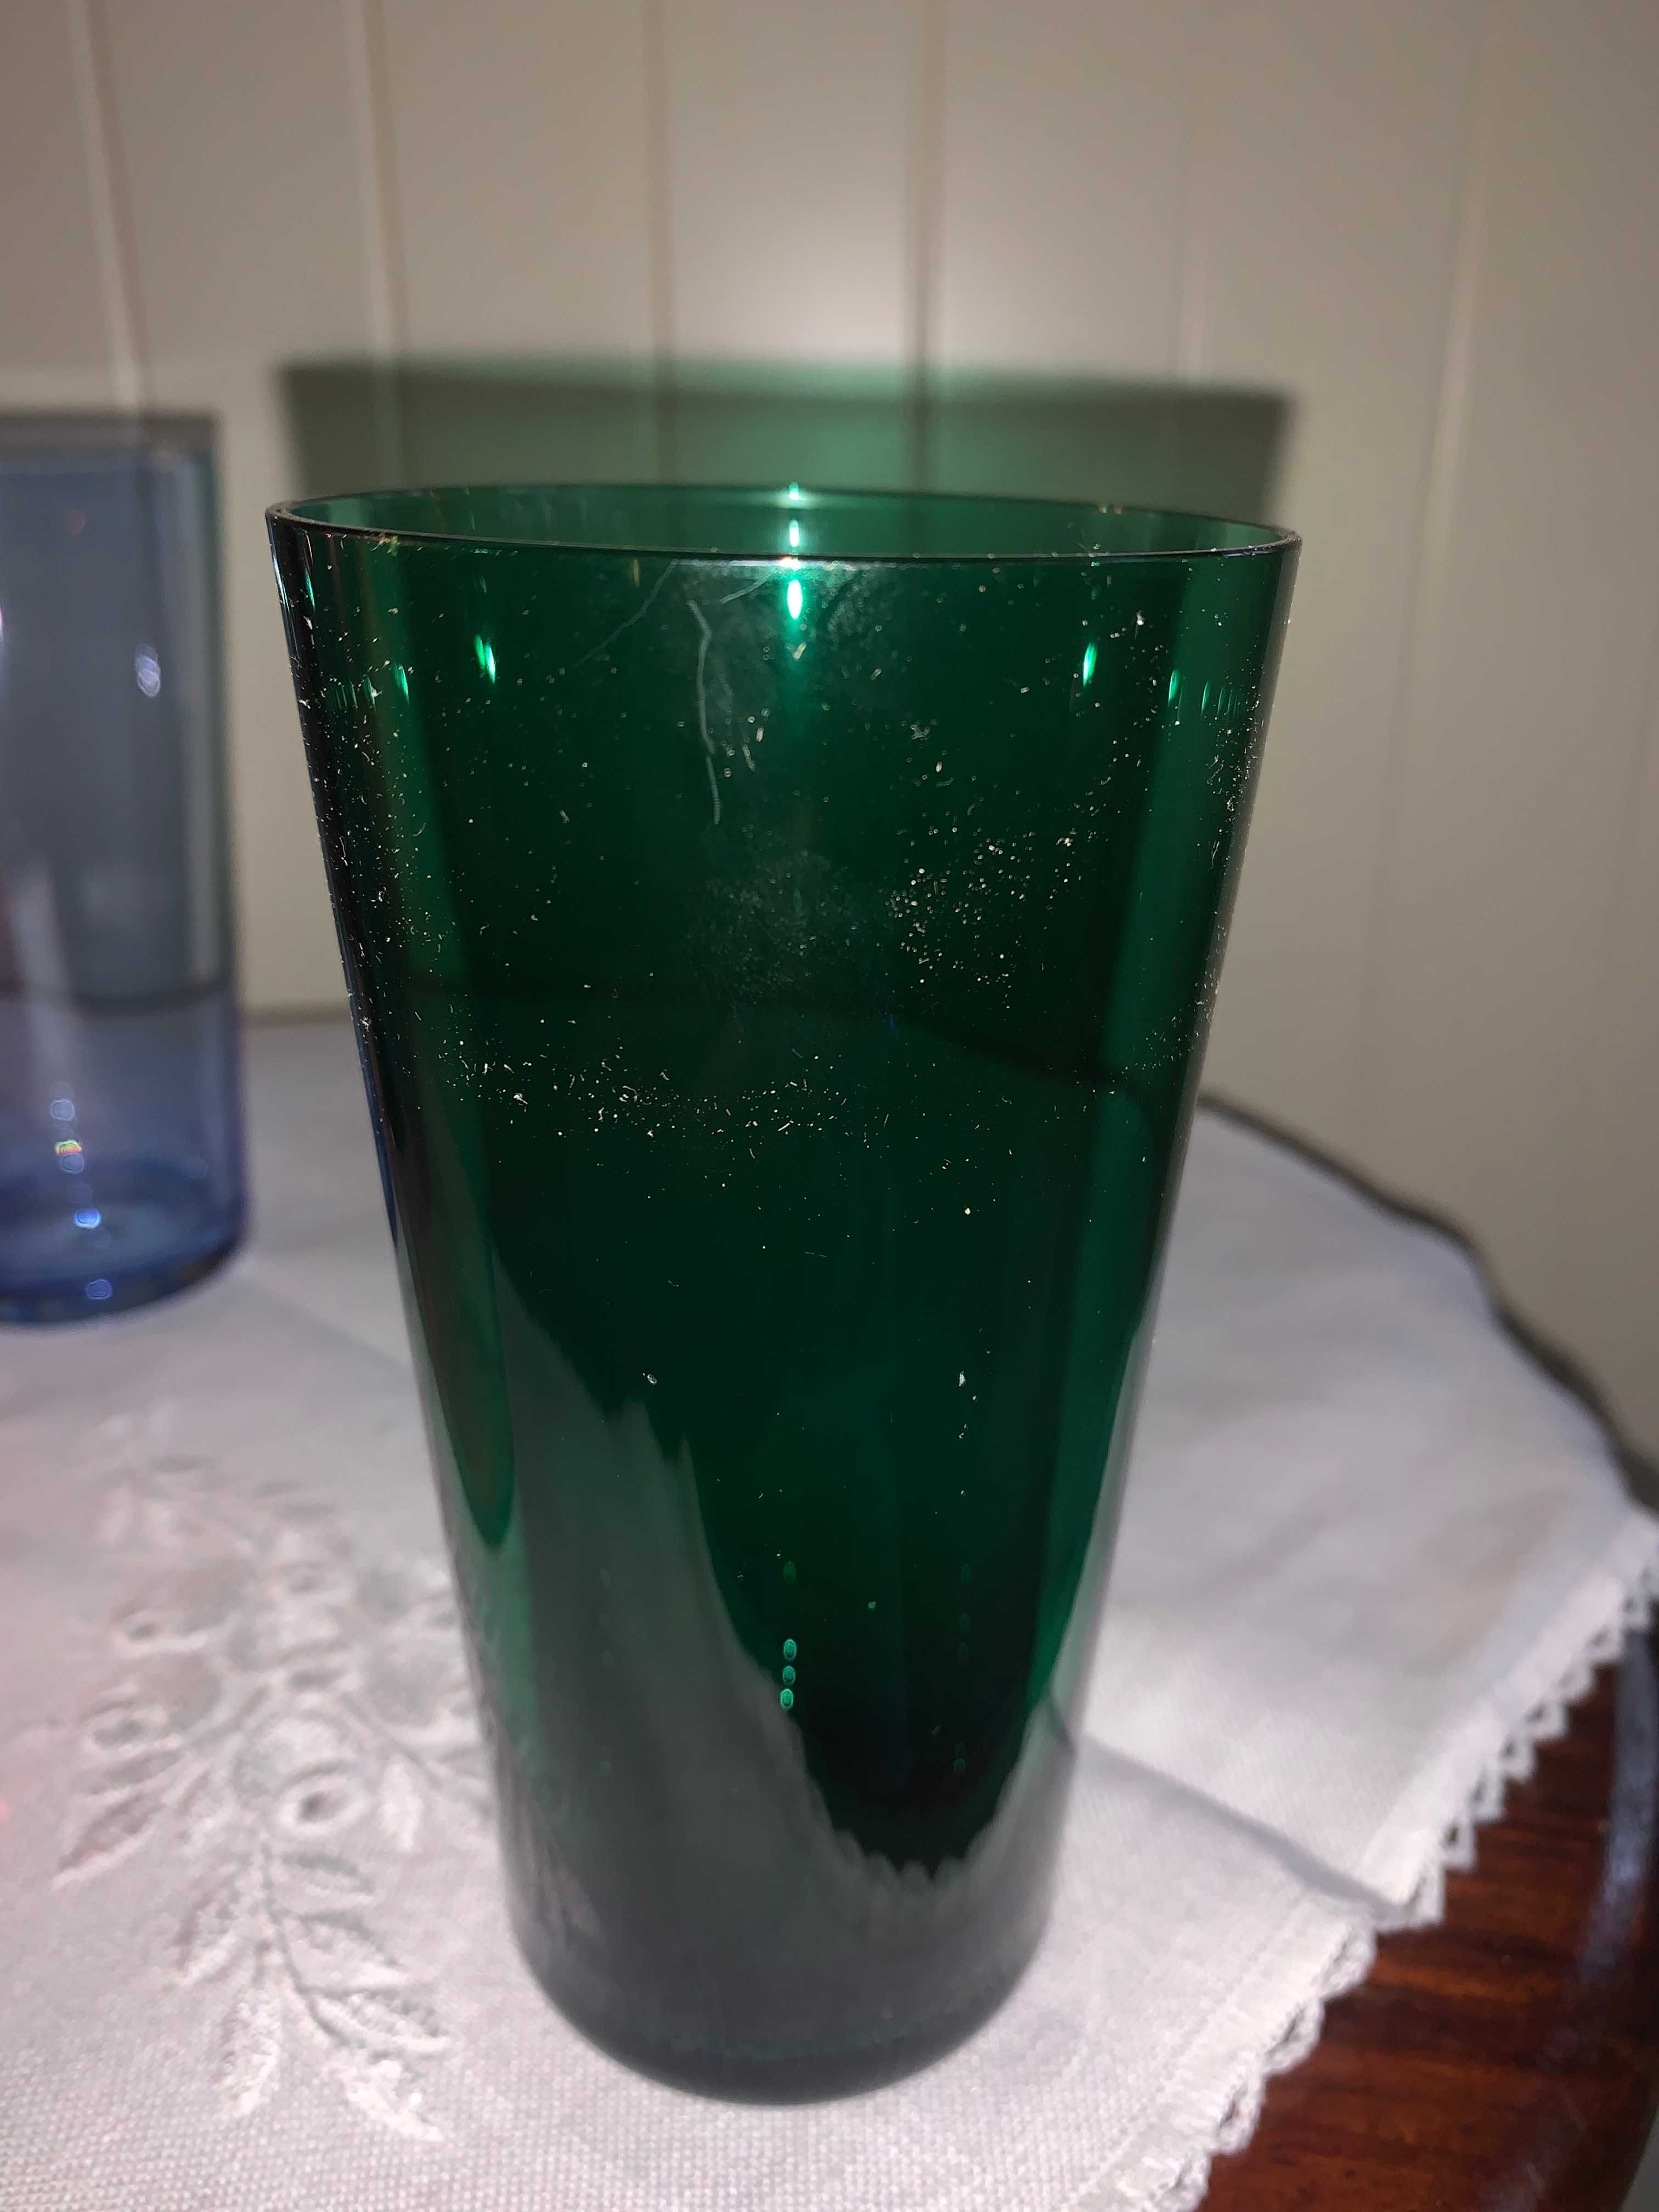 4 szklanki z kolorowego szkła